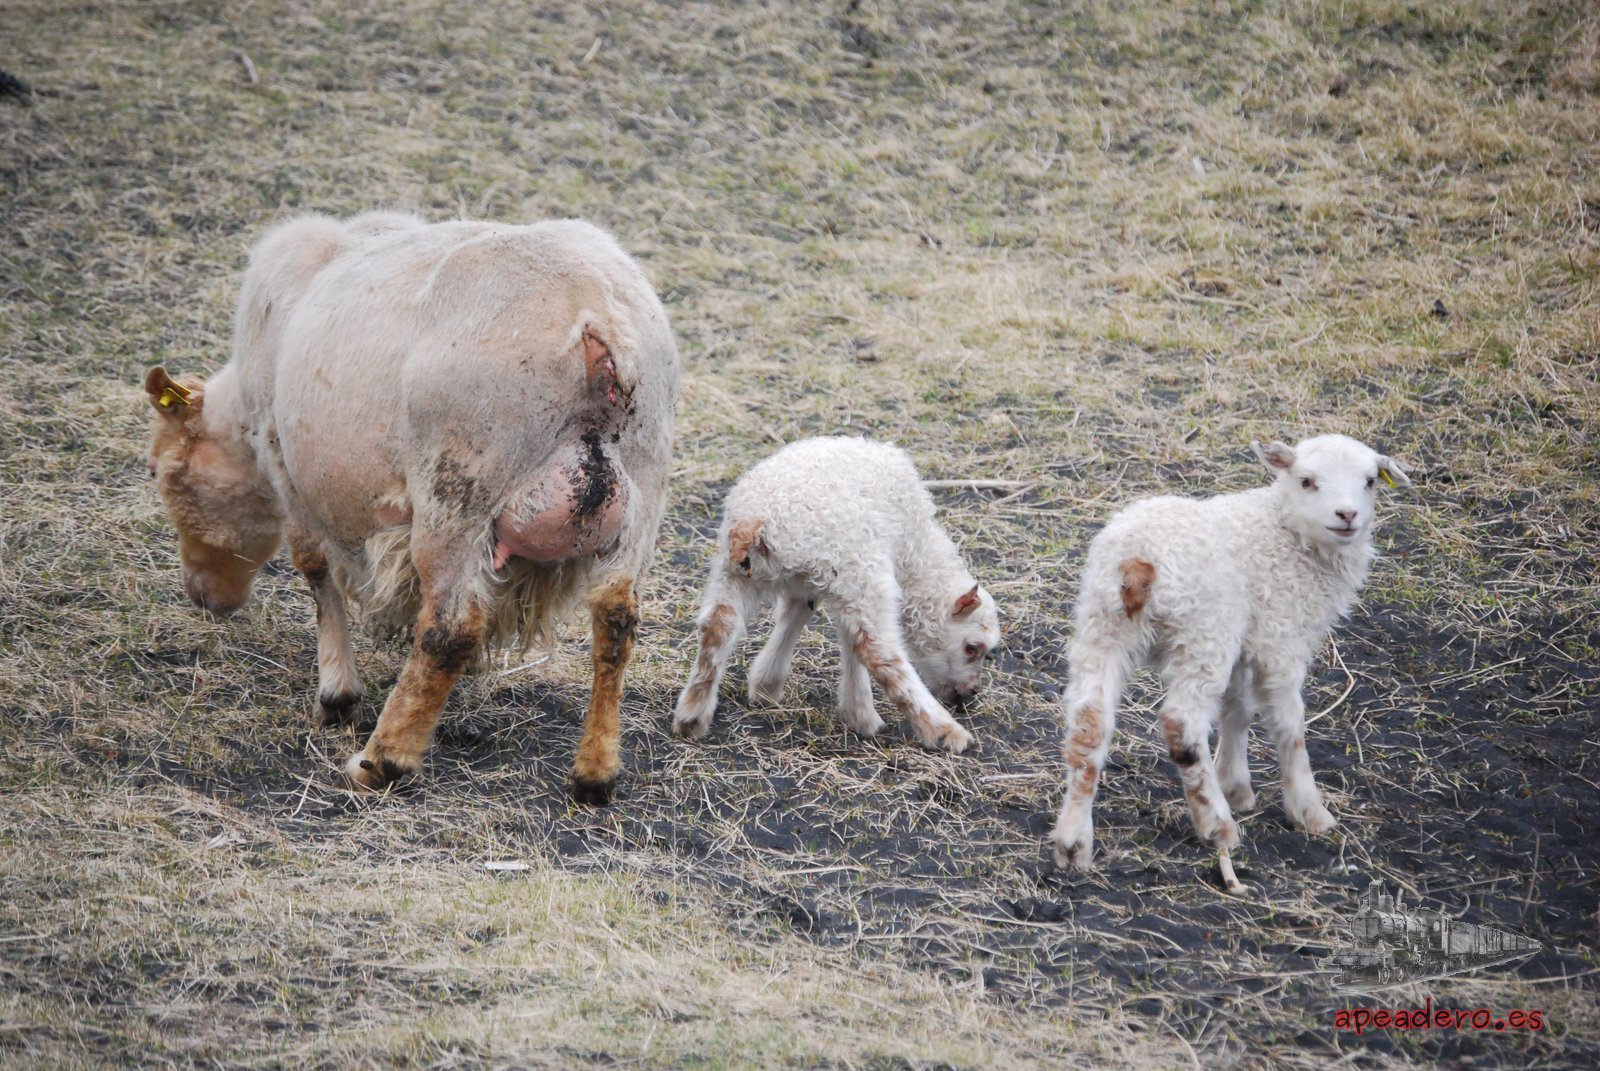 En Vik, quienes no viven del turismo viven de sus granjas. Encontramos a esta pareja de ovejas jóvenes junto a su madre.